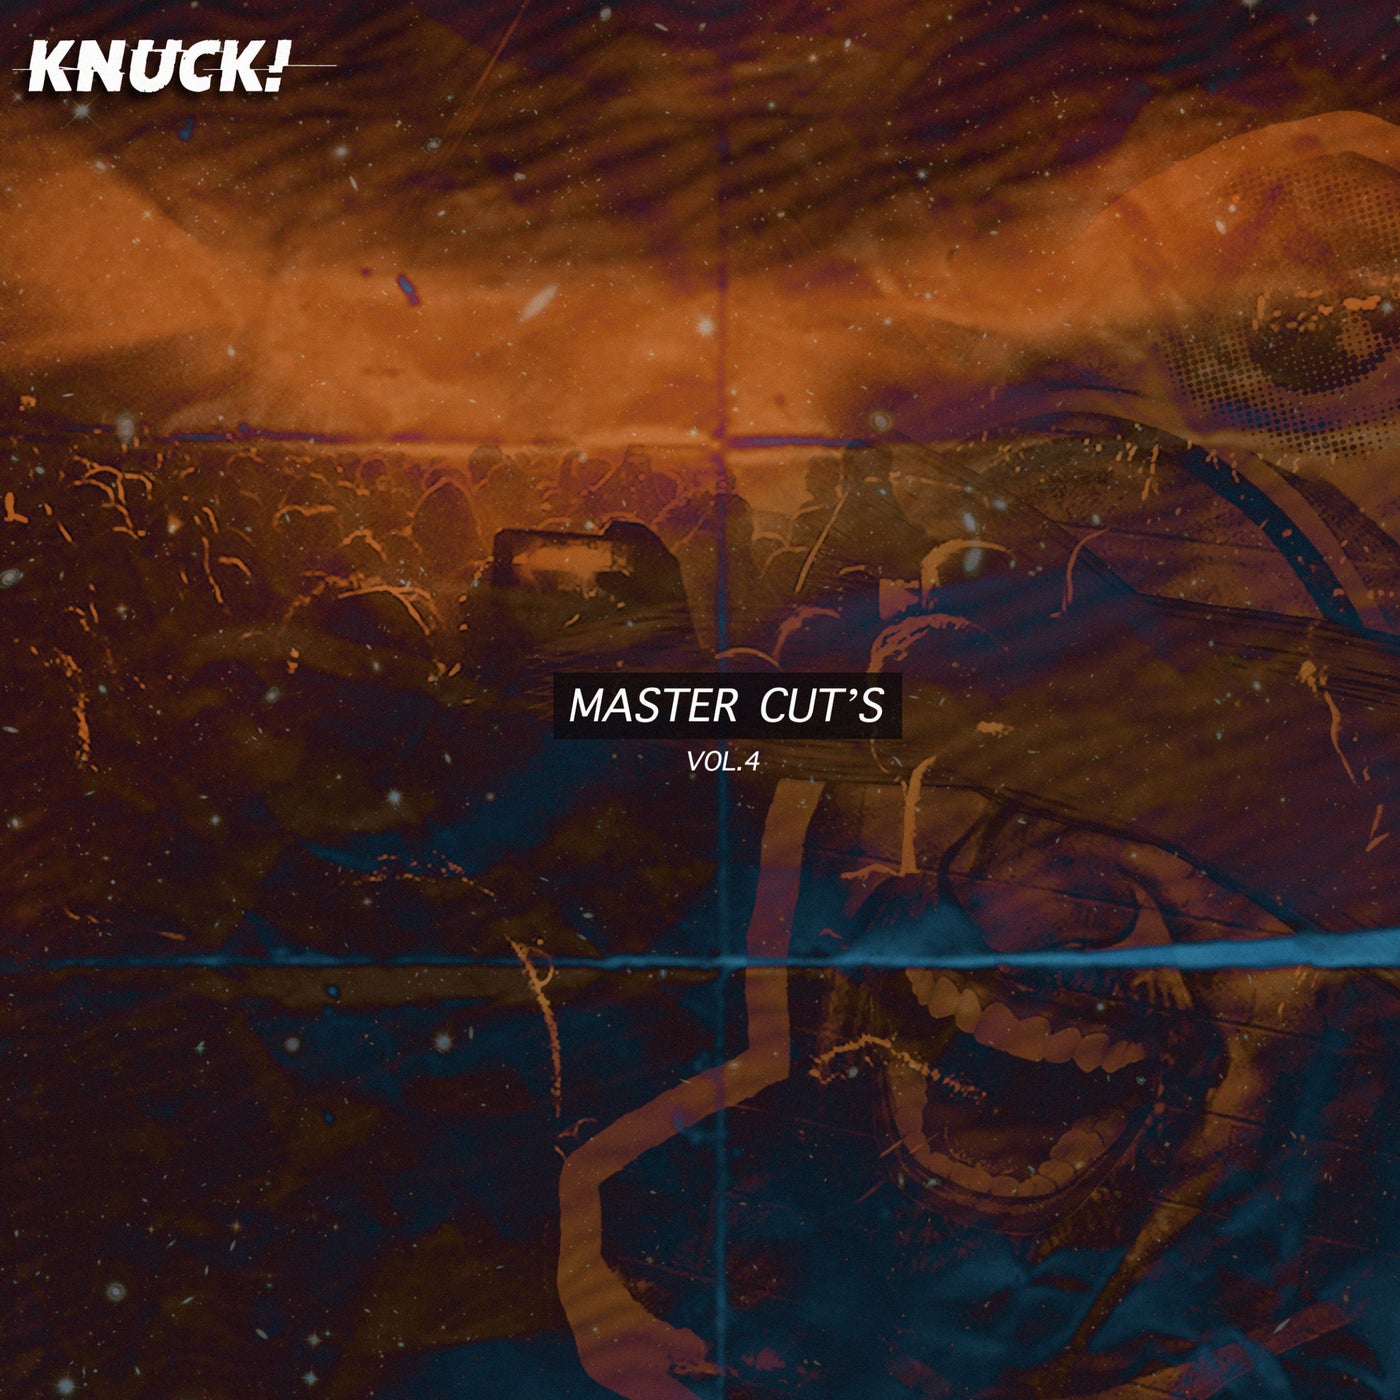 Master Cut's, Vol. 4